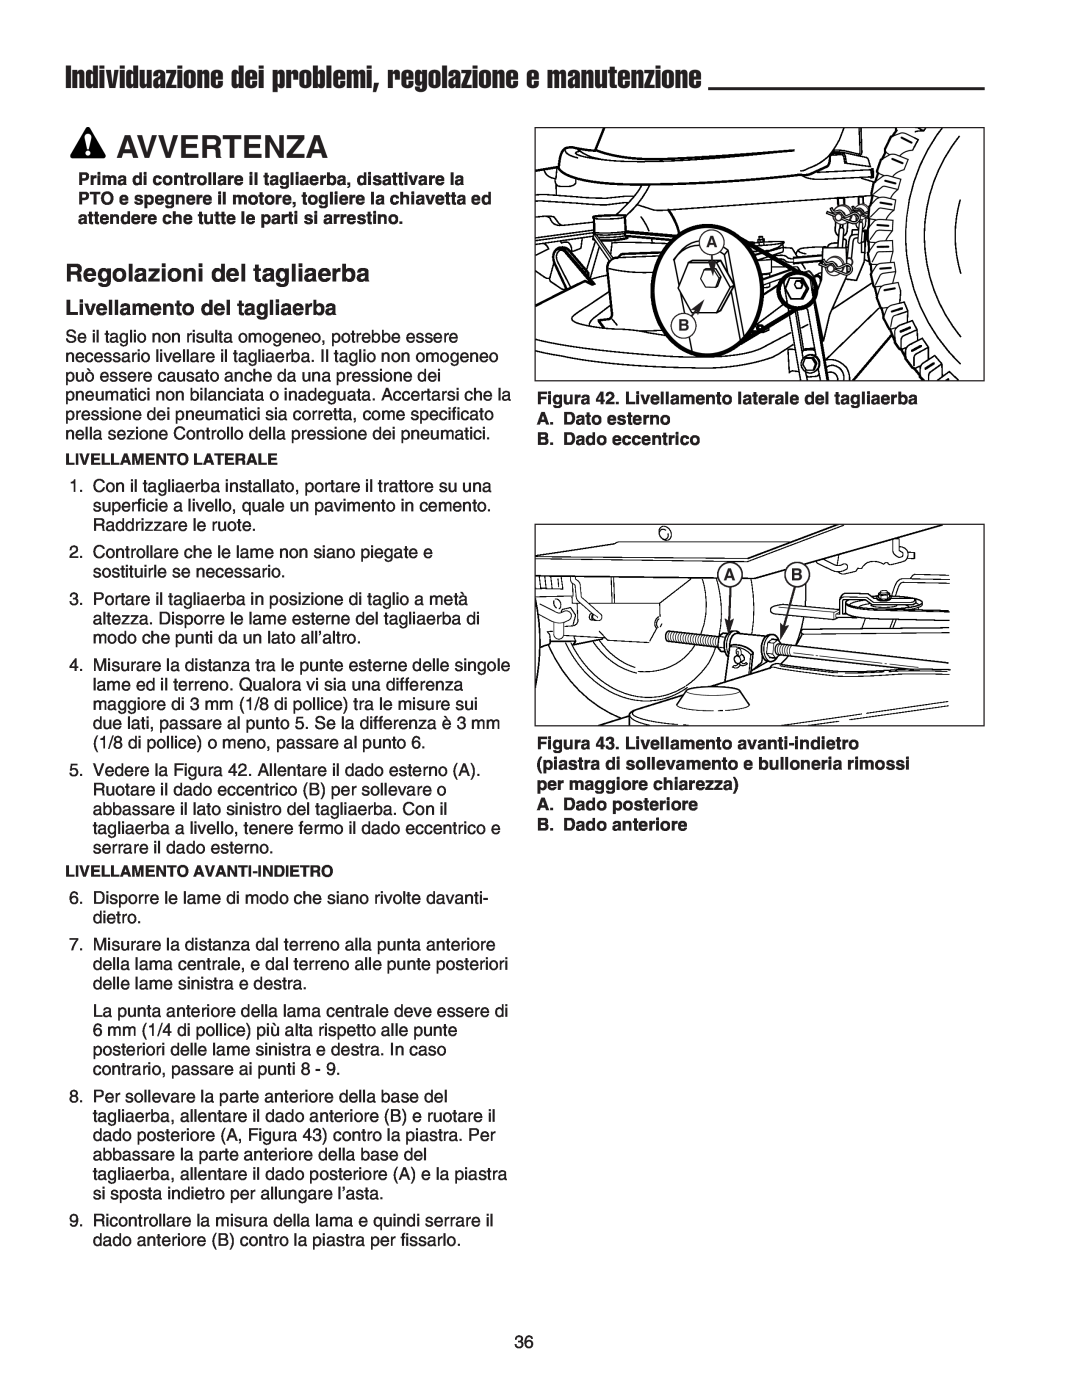 Briggs & Stratton Printer instruction sheet Regolazioni del tagliaerba, Livellamento del tagliaerba, Avvertenza 